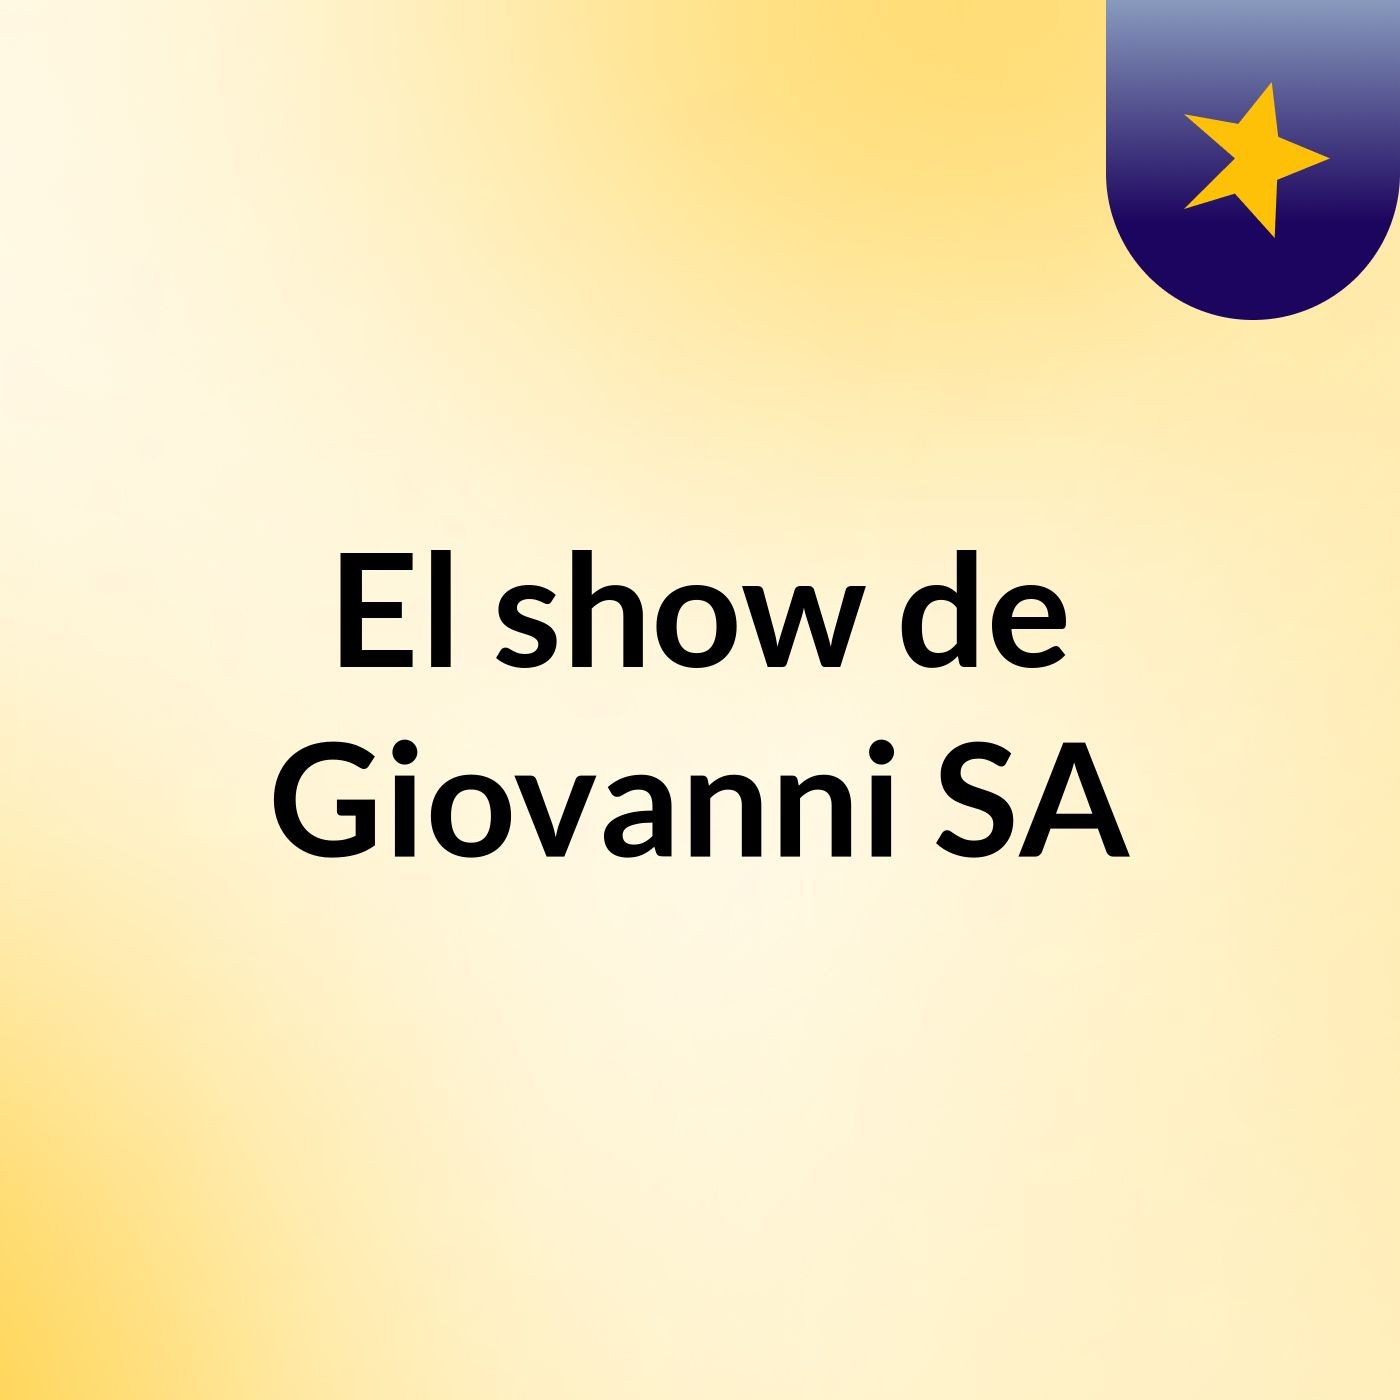 Episodio 2 - El show de Giovanni SA